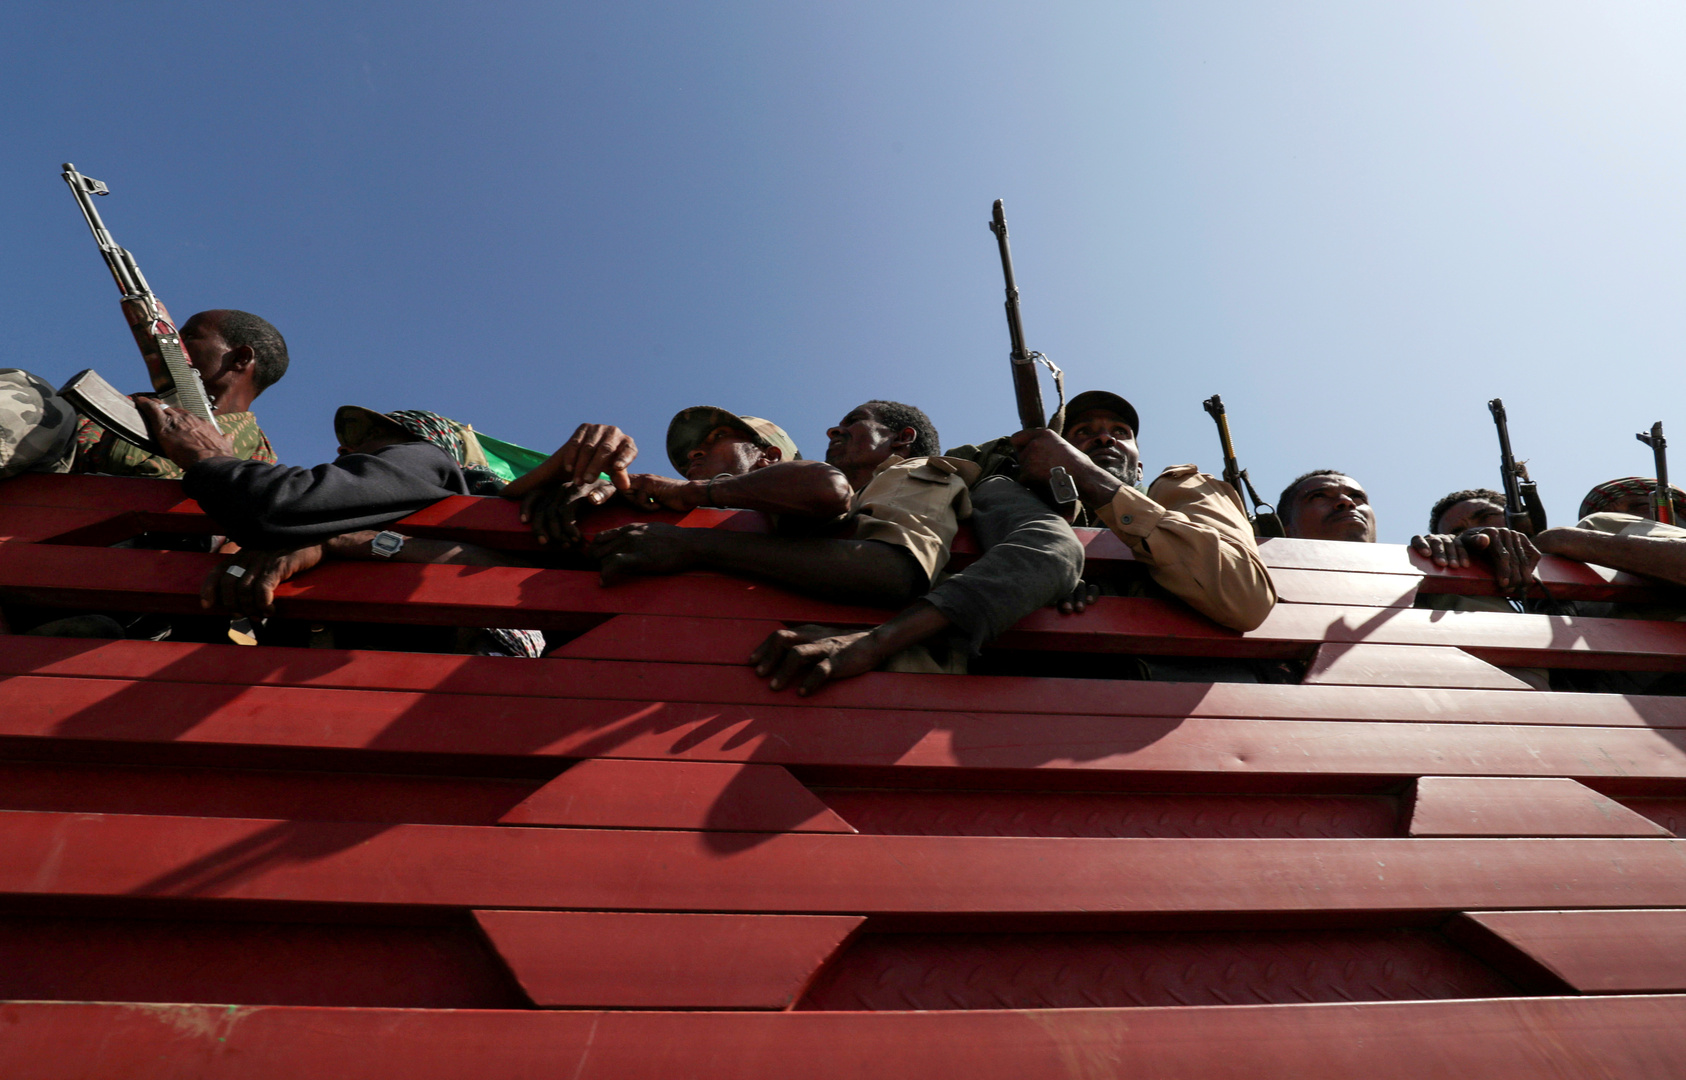 السودان.. مقتل ضابط برتبه رفيعة على الحدود مع إثيوبيا وأنباء عن حشود عسكرية باتجاه المنطقة